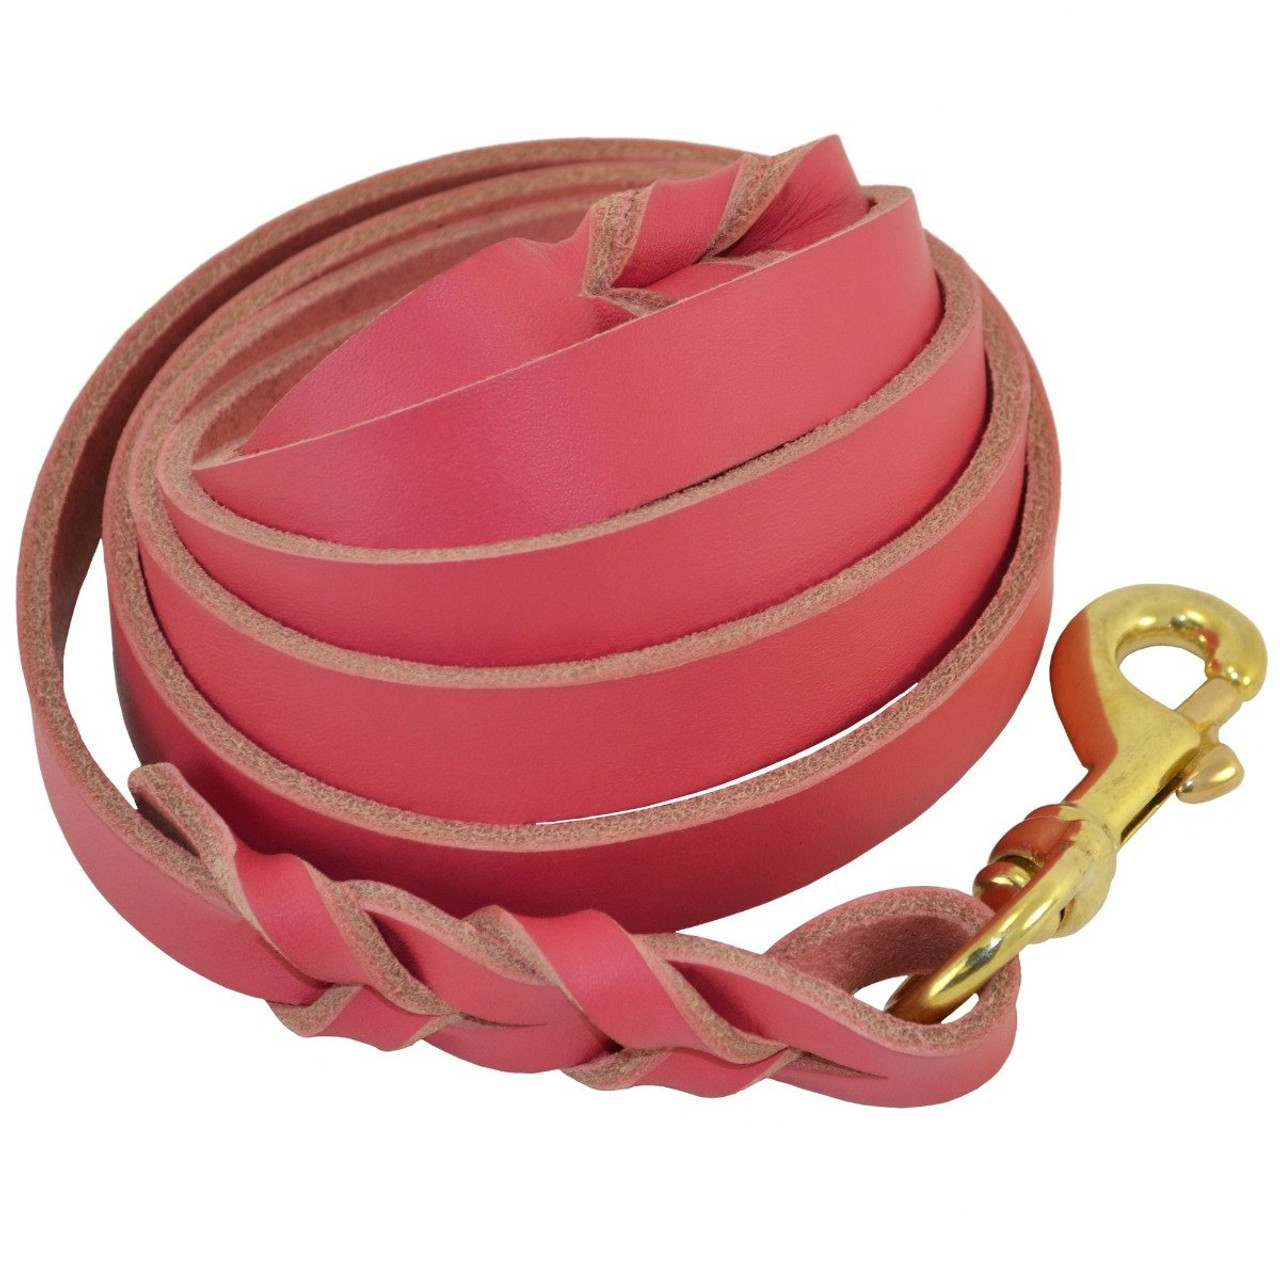 braided leather dog lead